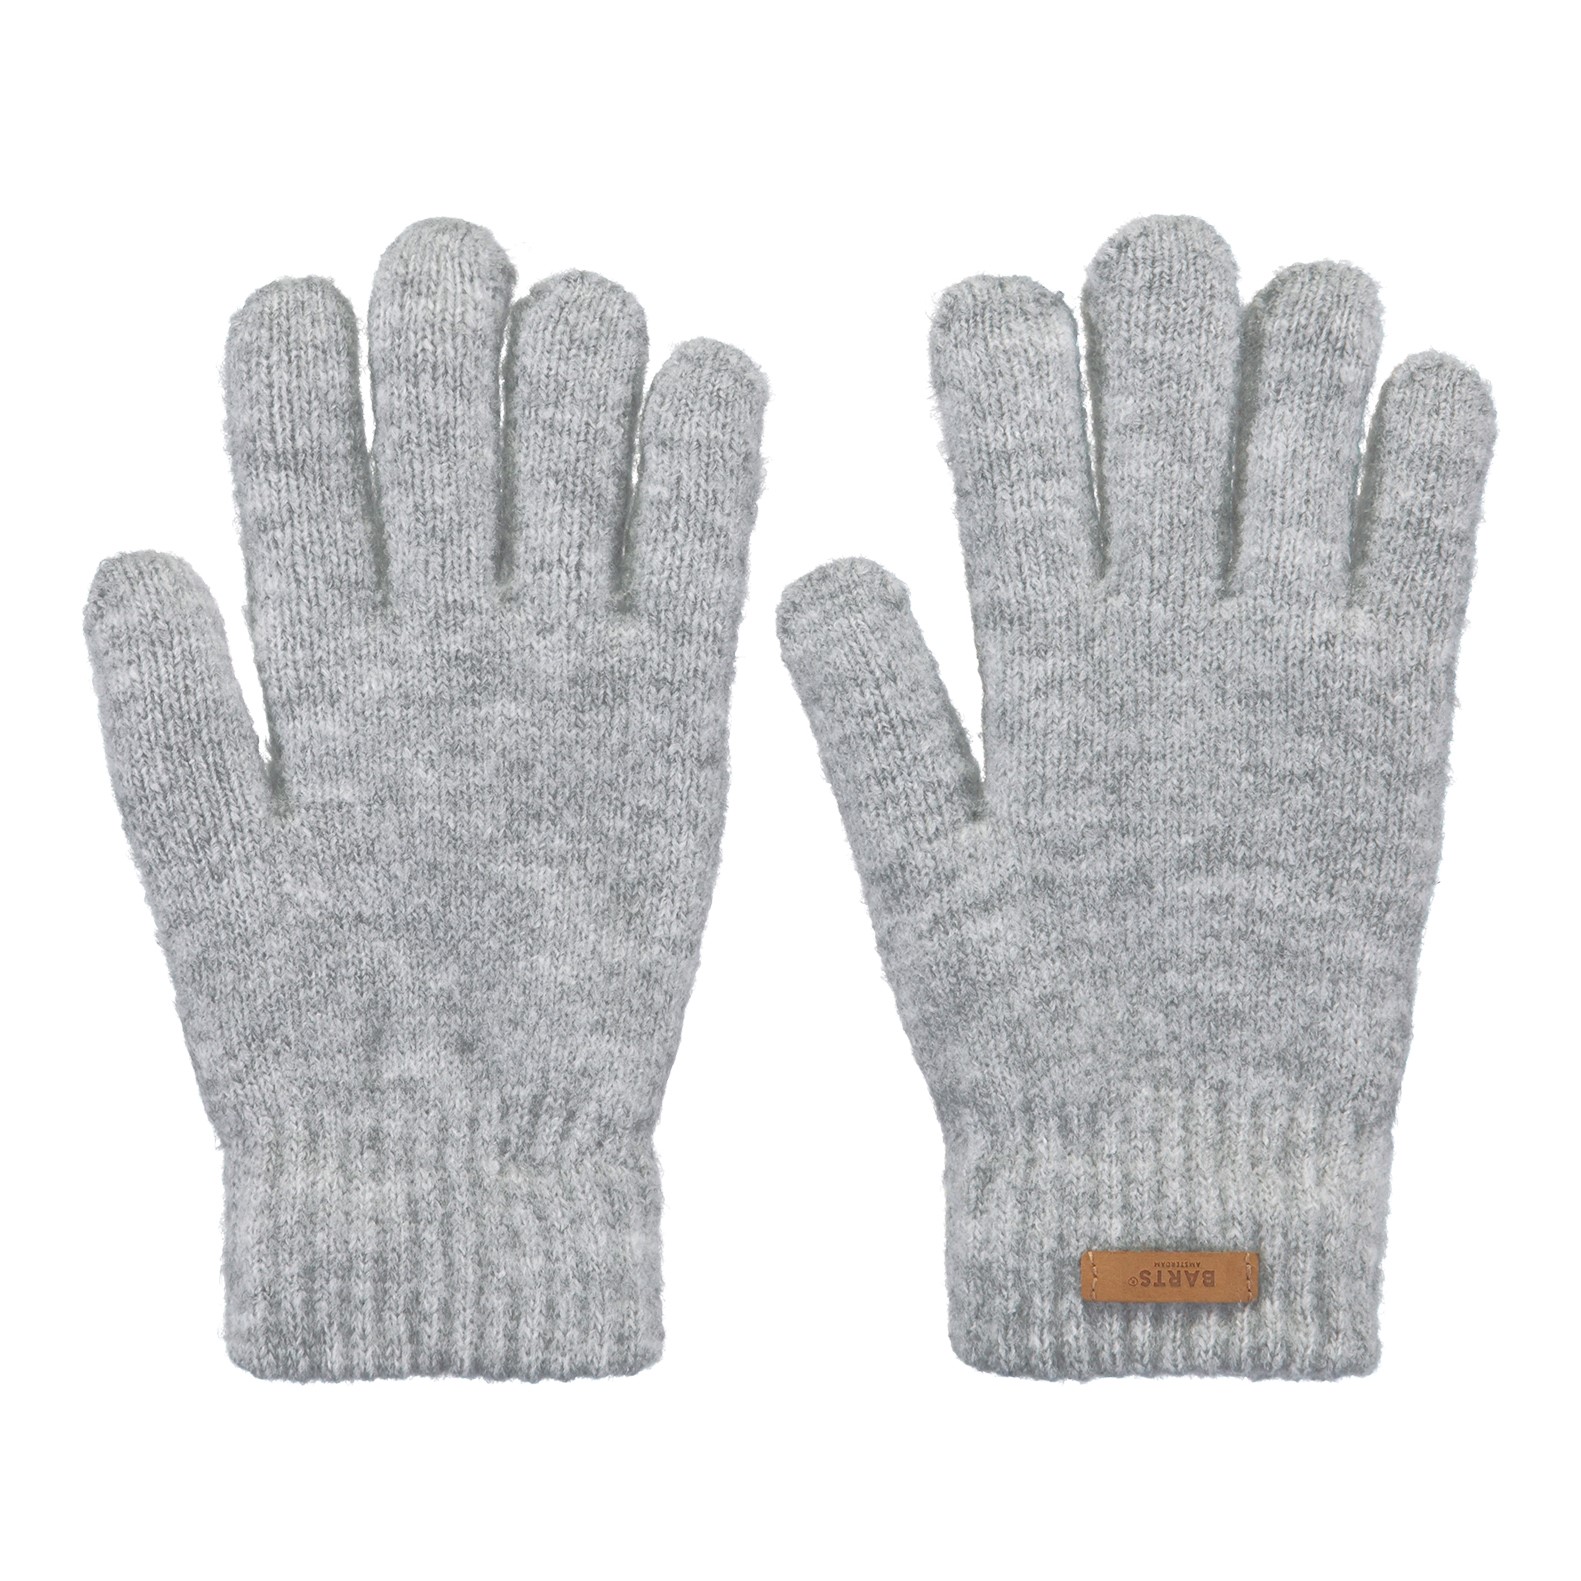 Desigual S Fun Cold Weather Handschoenen in het Zwart Dames Accessoires voor voor Handschoenen voor 